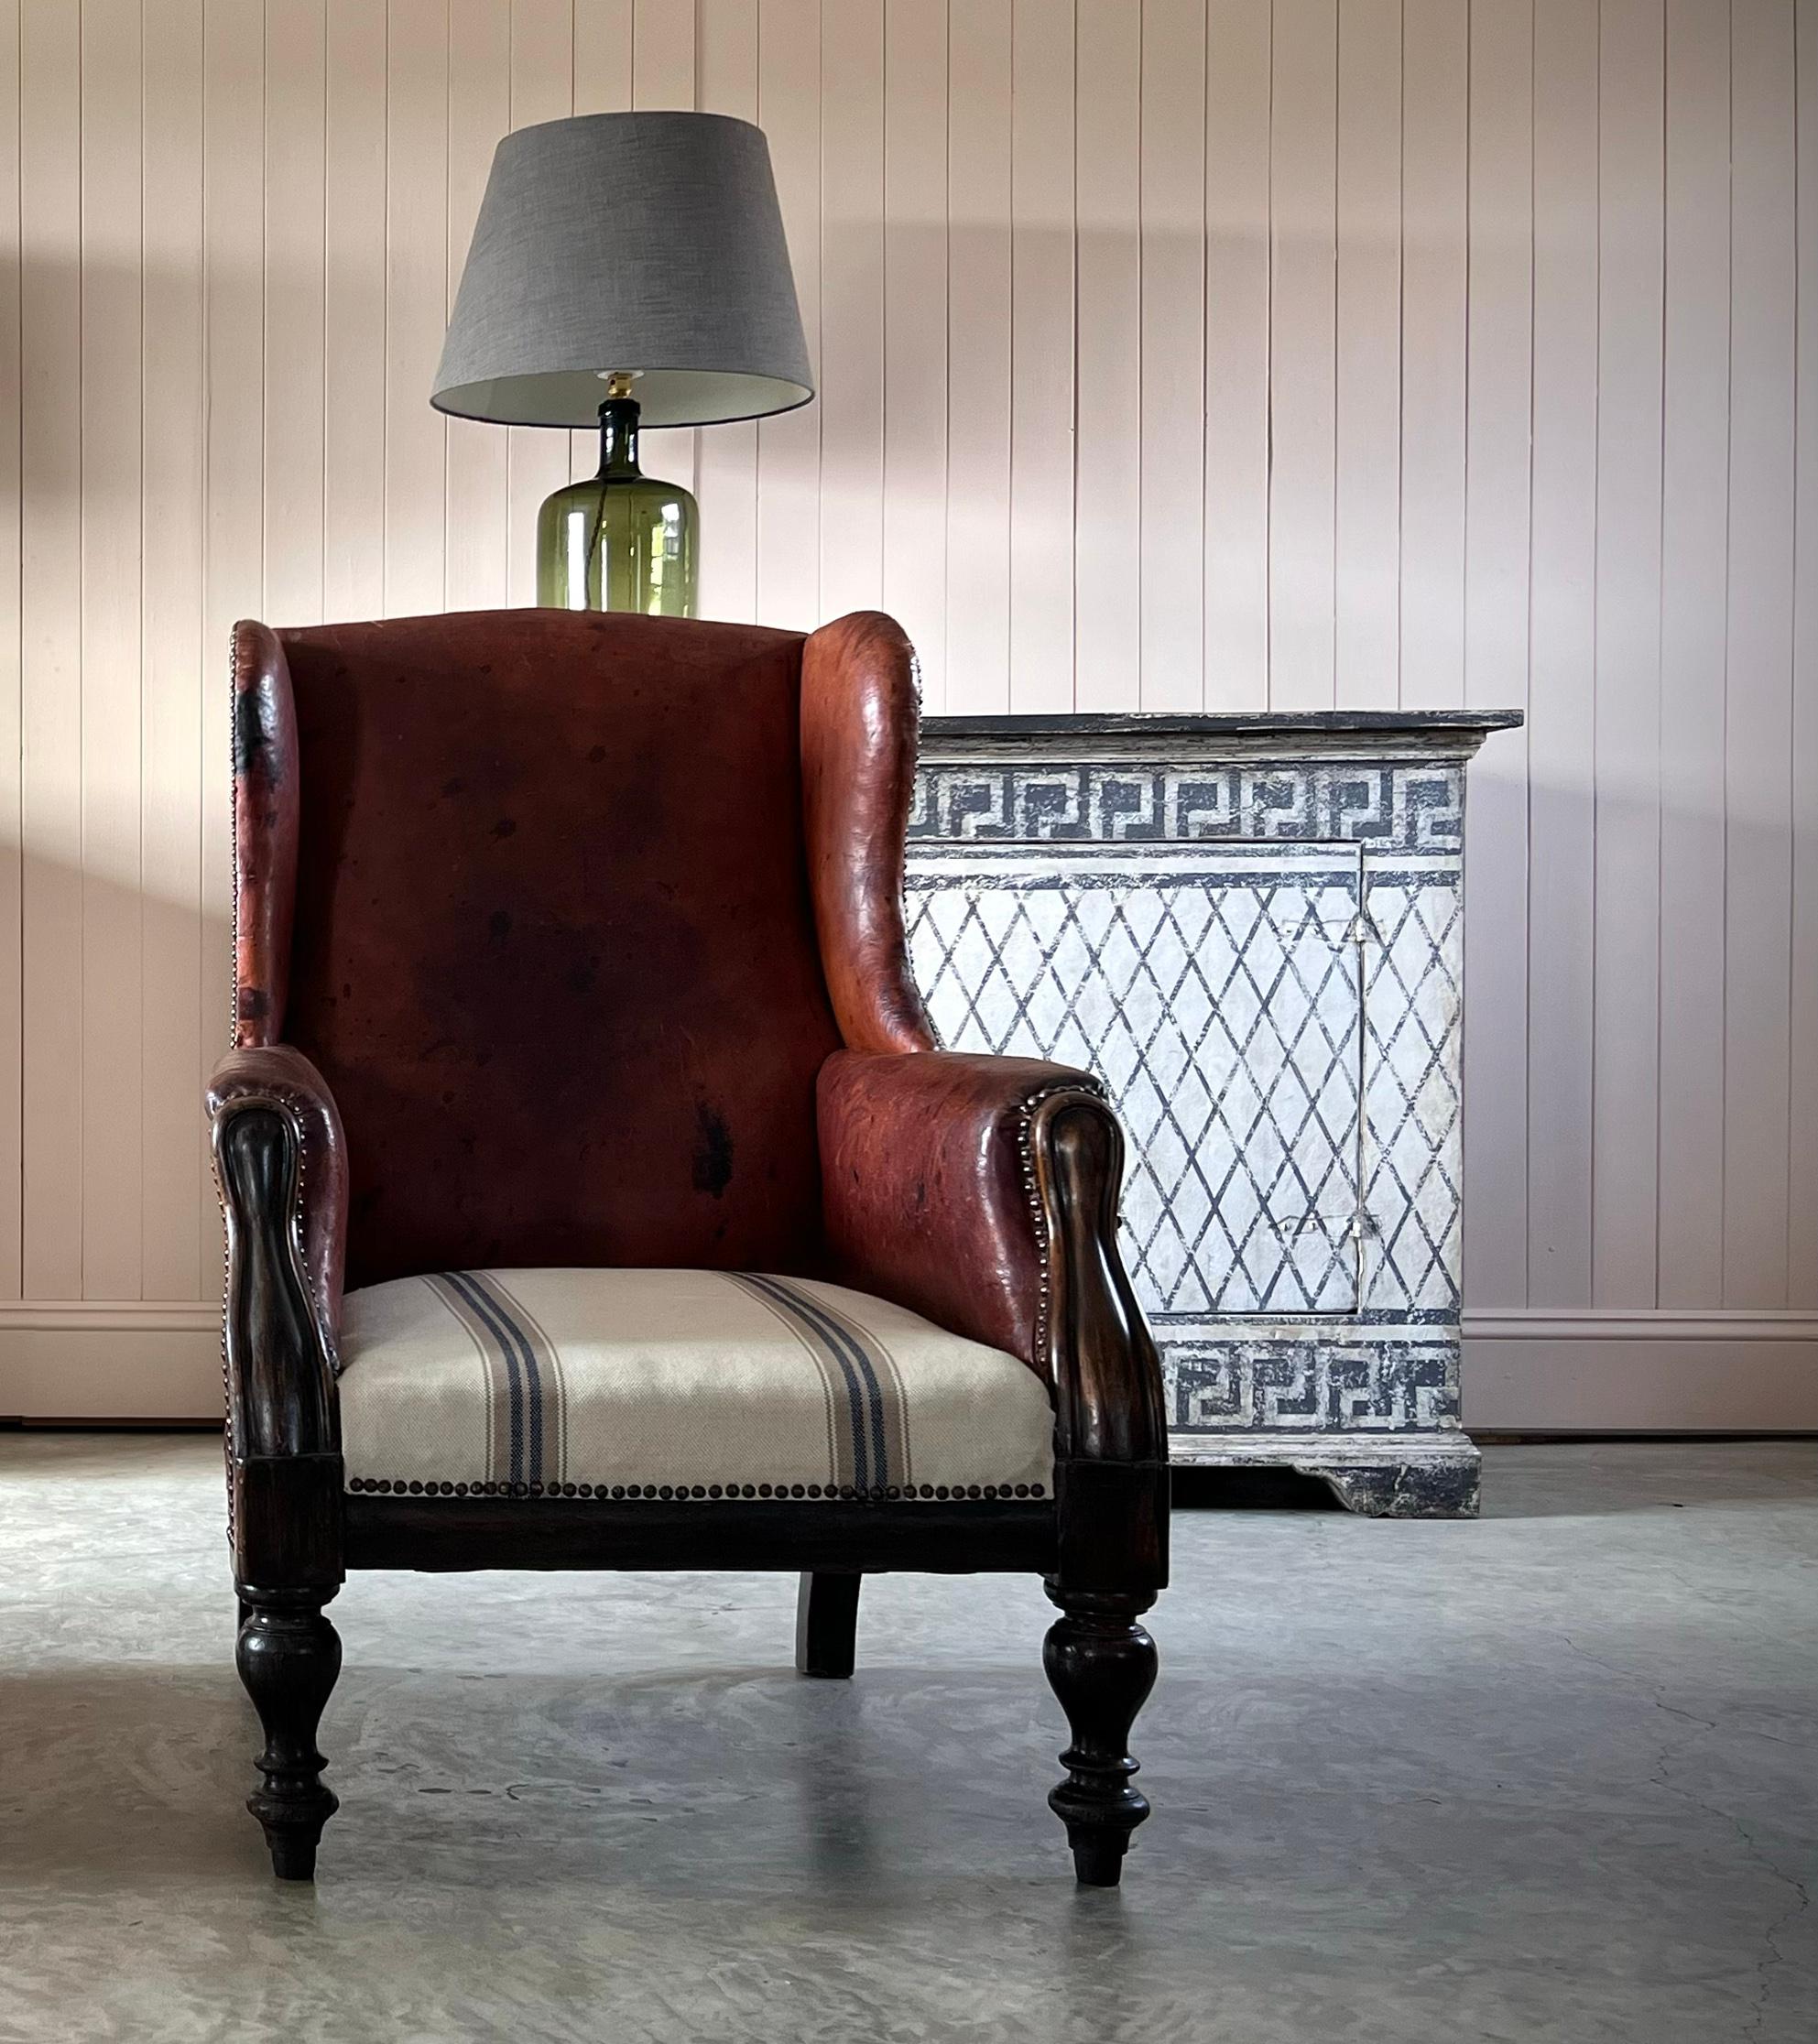 Dieser Lederstuhl aus der Mitte des 19. Jahrhunderts hat eine fantastische Farbe und Patina.  Jede Menge Charakter und Textur. Der Ohrensessel wurde ursprünglich entworfen, um Zugluft abzuhalten und die Wärme des Feuers drinnen zu halten - heute ist